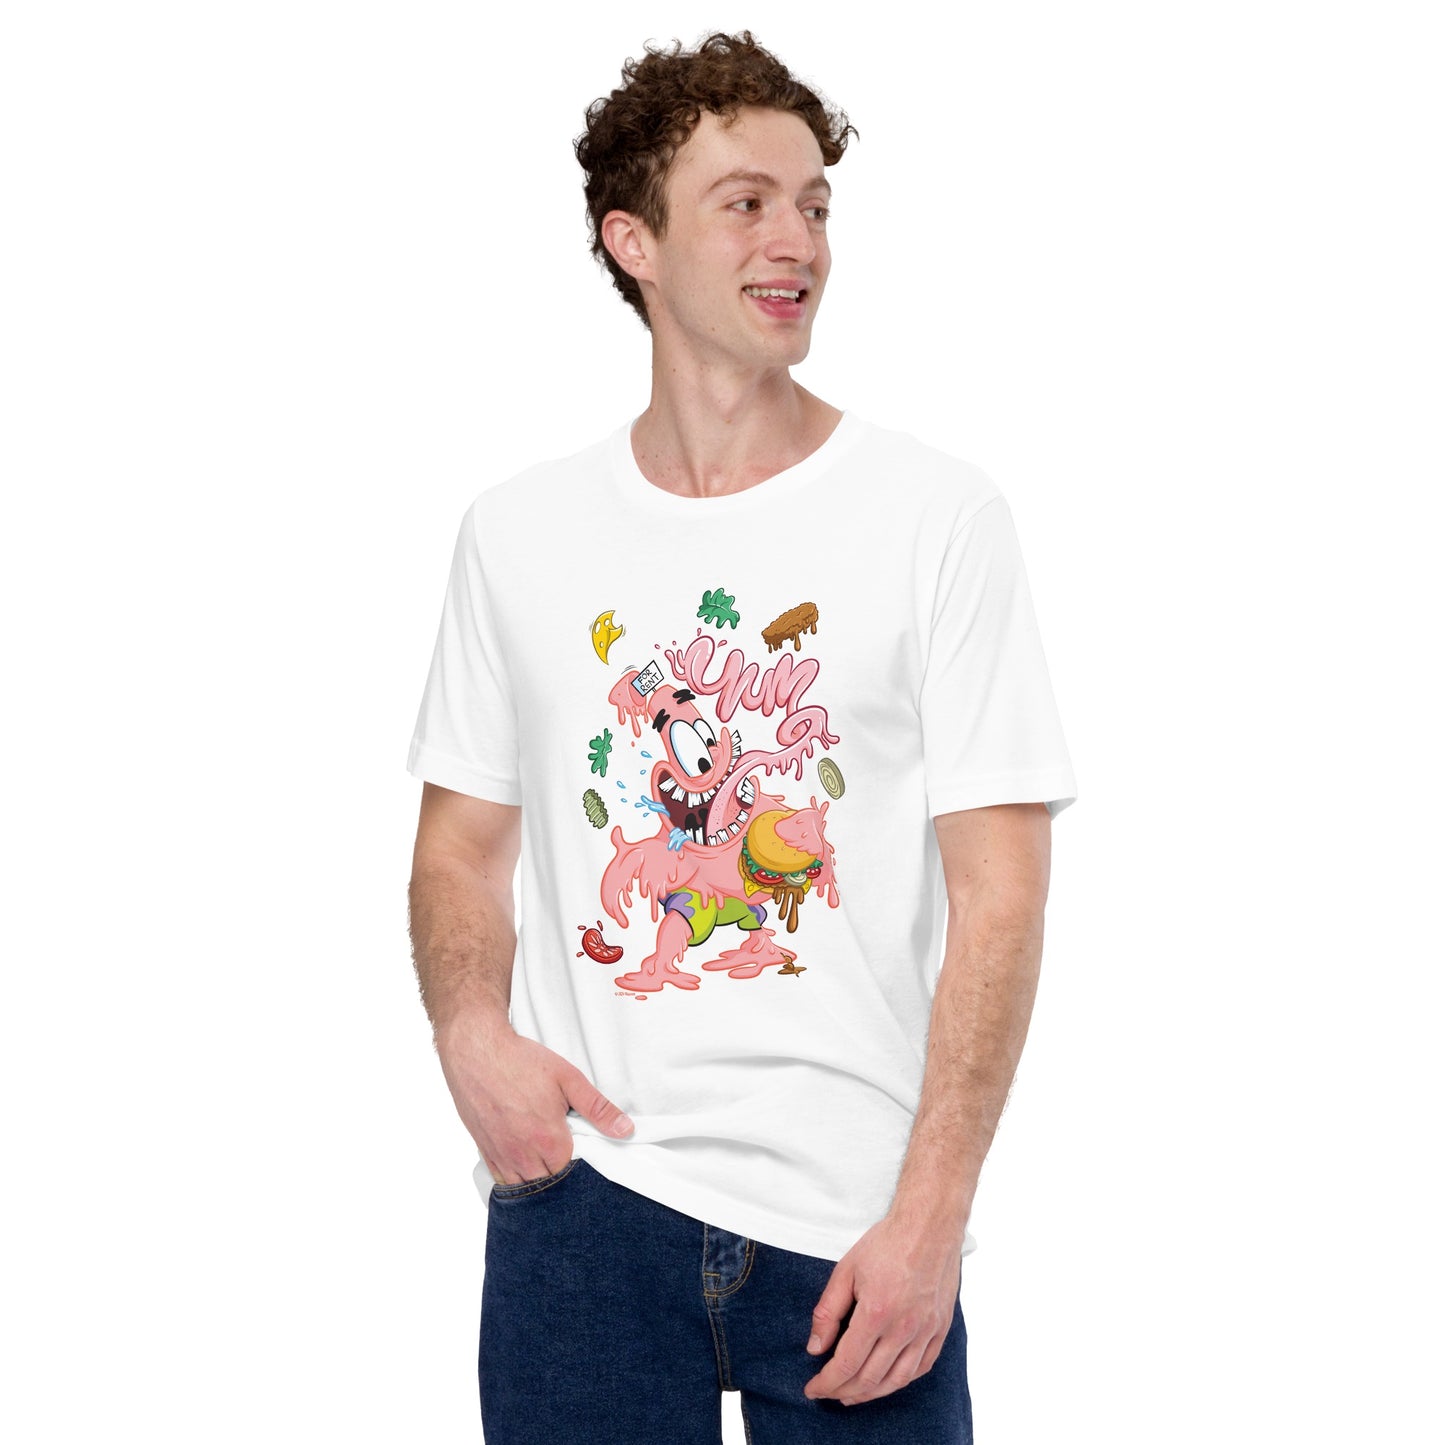 Patrick Krusty Hosen Erwachsene T-Shirt